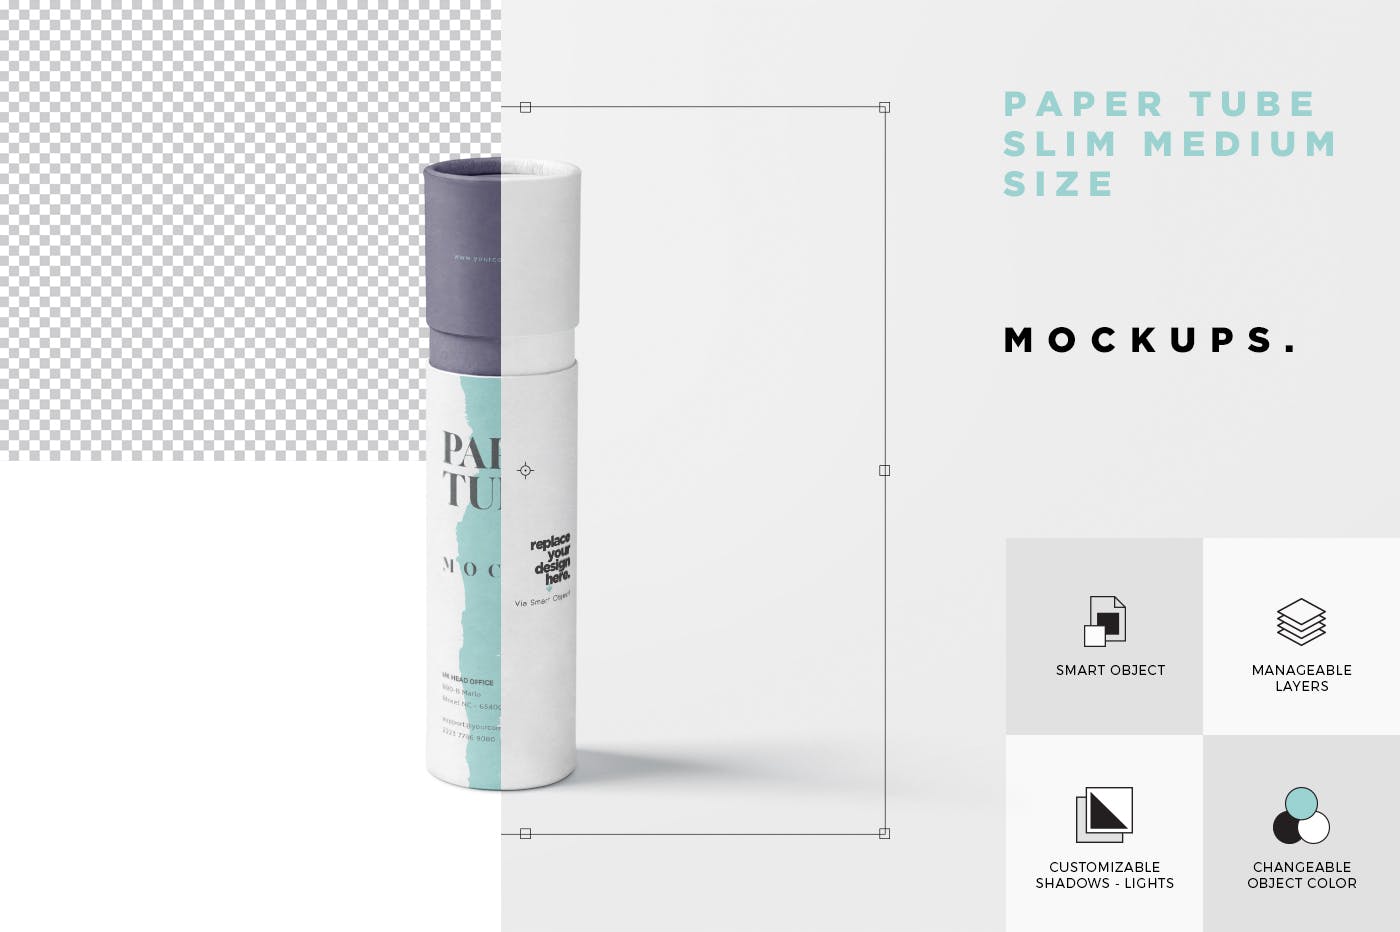 长纸管包装外观设计蚂蚁素材精选模板 Paper Tube Mockup Set – Slim Medium Size插图(6)